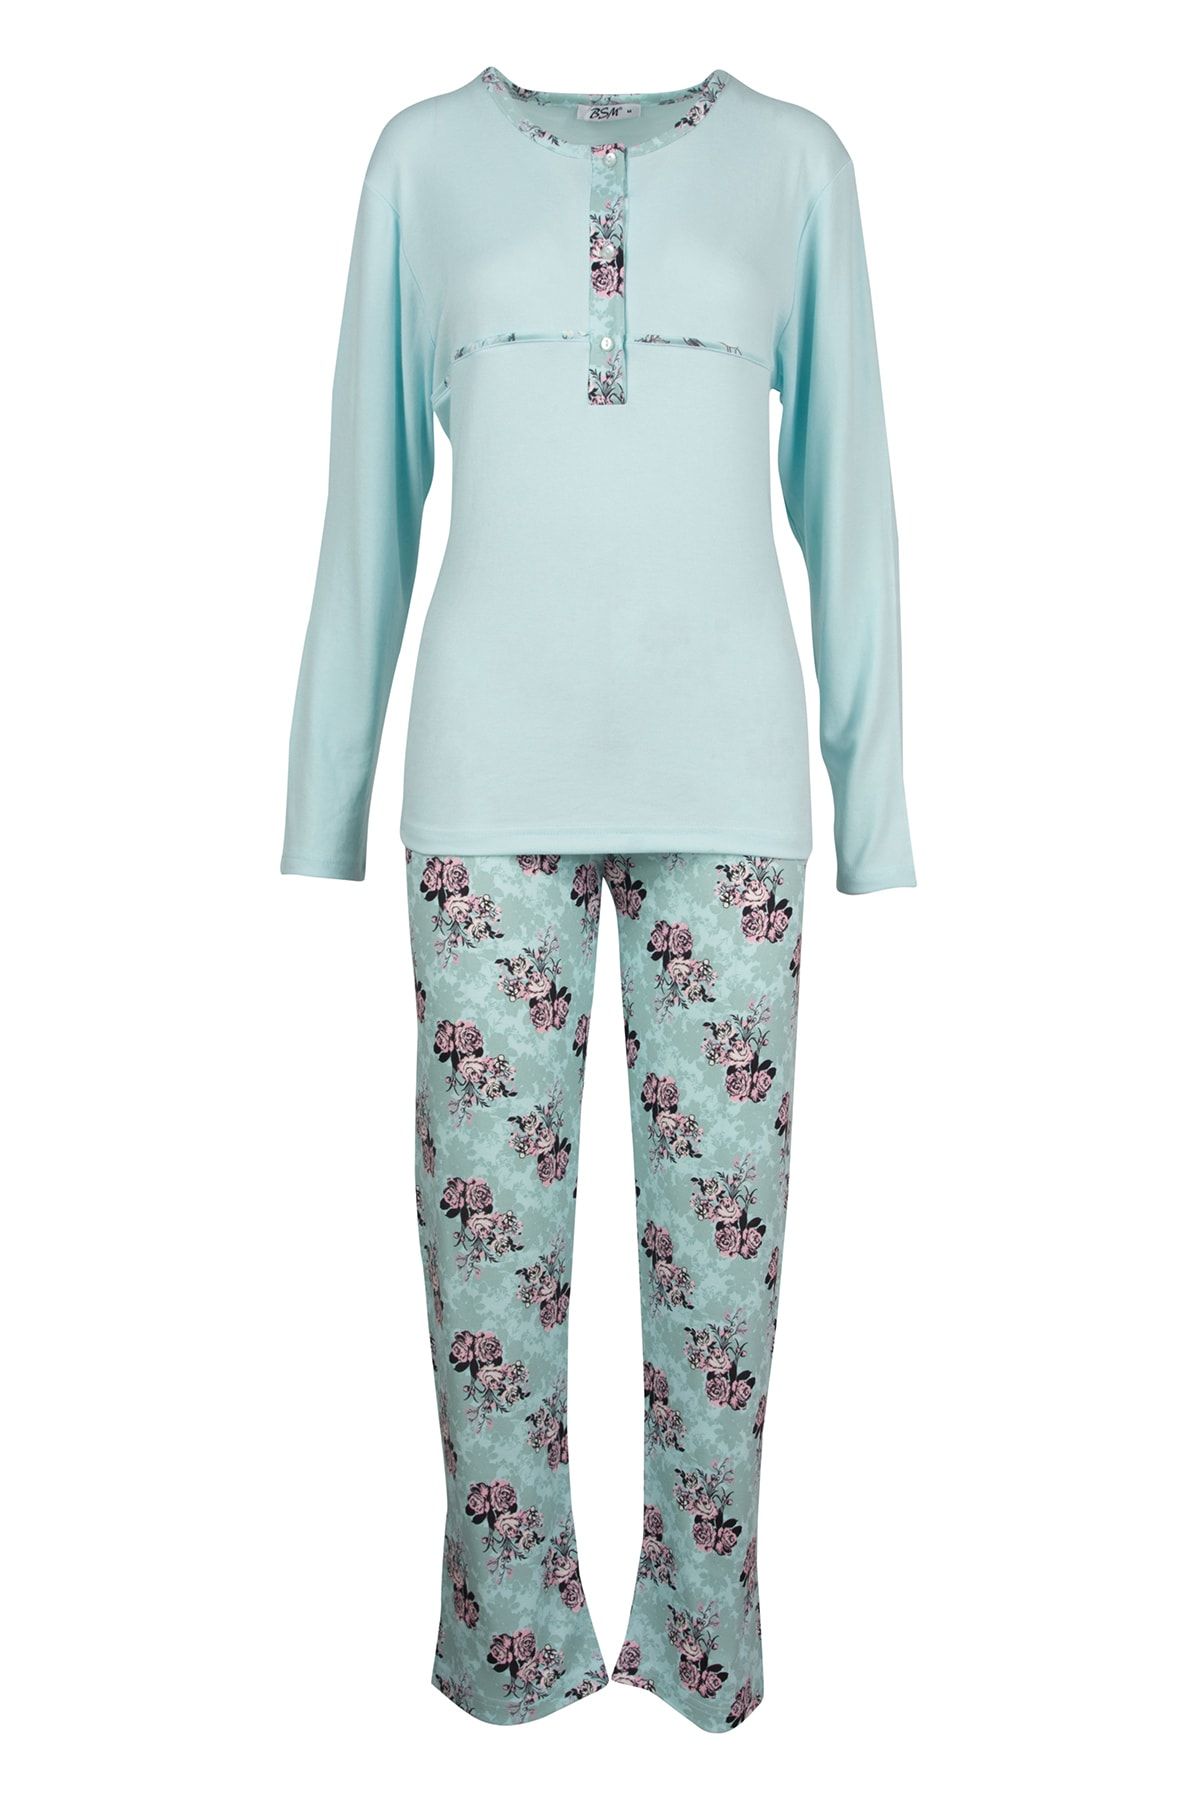 BSM Kadın Pamuklu Yüksek Kalite Üç Düğmeli Uzun Kol Pijama takımı